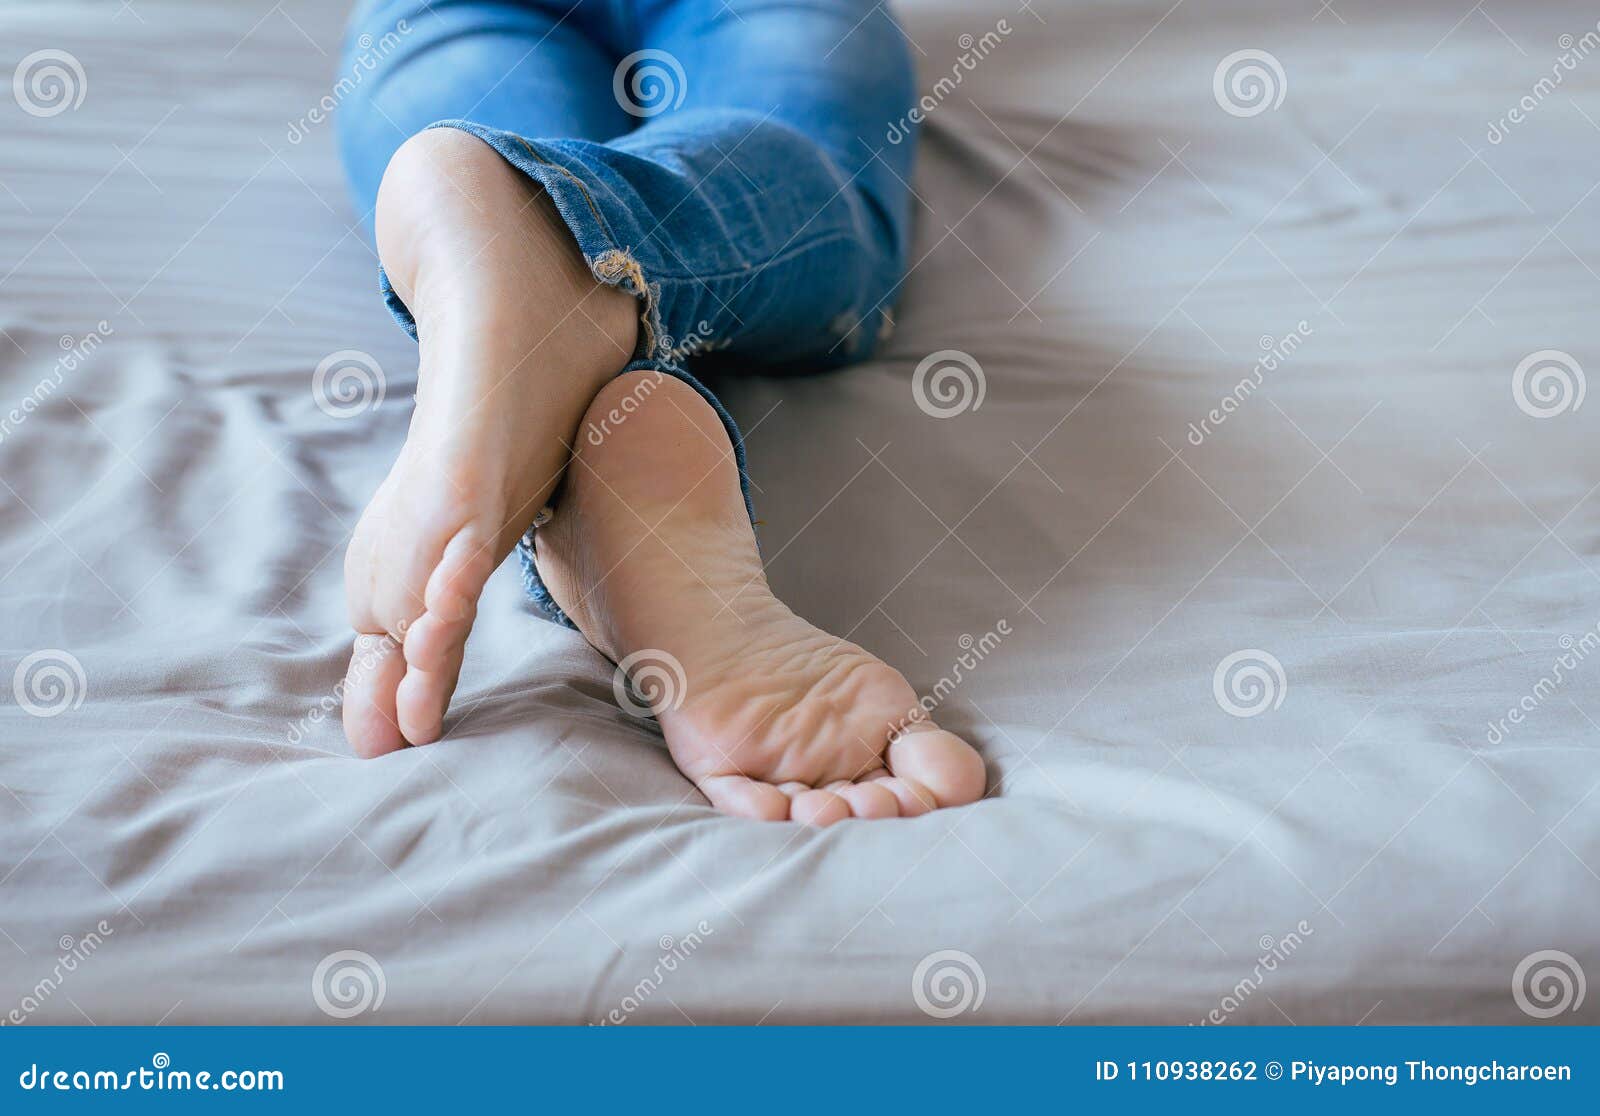 feet jeans foot